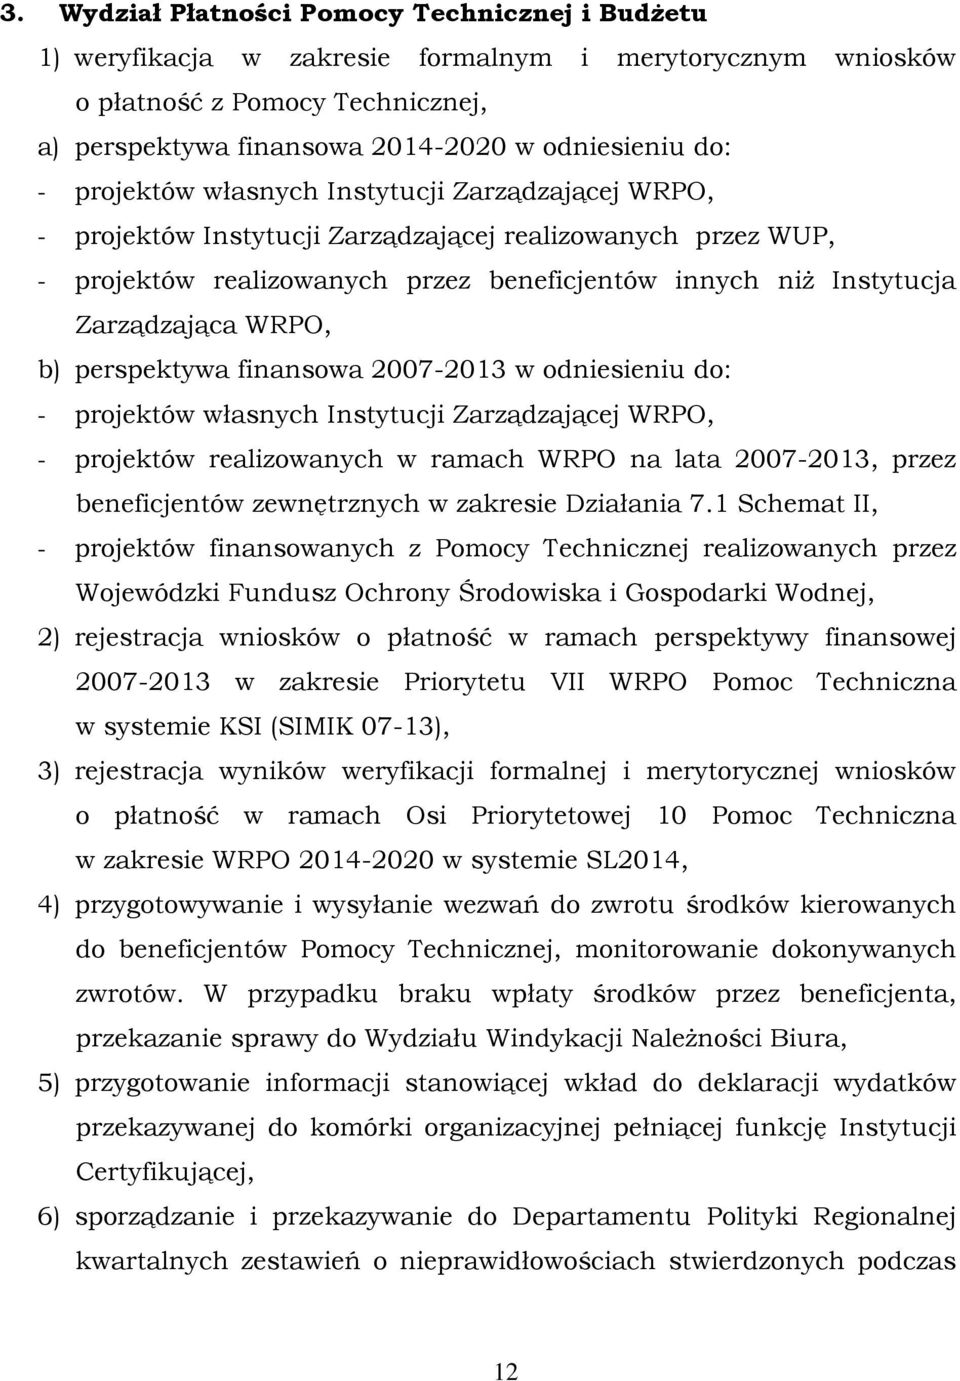 b) perspektywa finansowa 2007-2013 w odniesieniu do: - projektów własnych Instytucji Zarządzającej WRPO, - projektów realizowanych w ramach WRPO na lata 2007-2013, przez beneficjentów zewnętrznych w